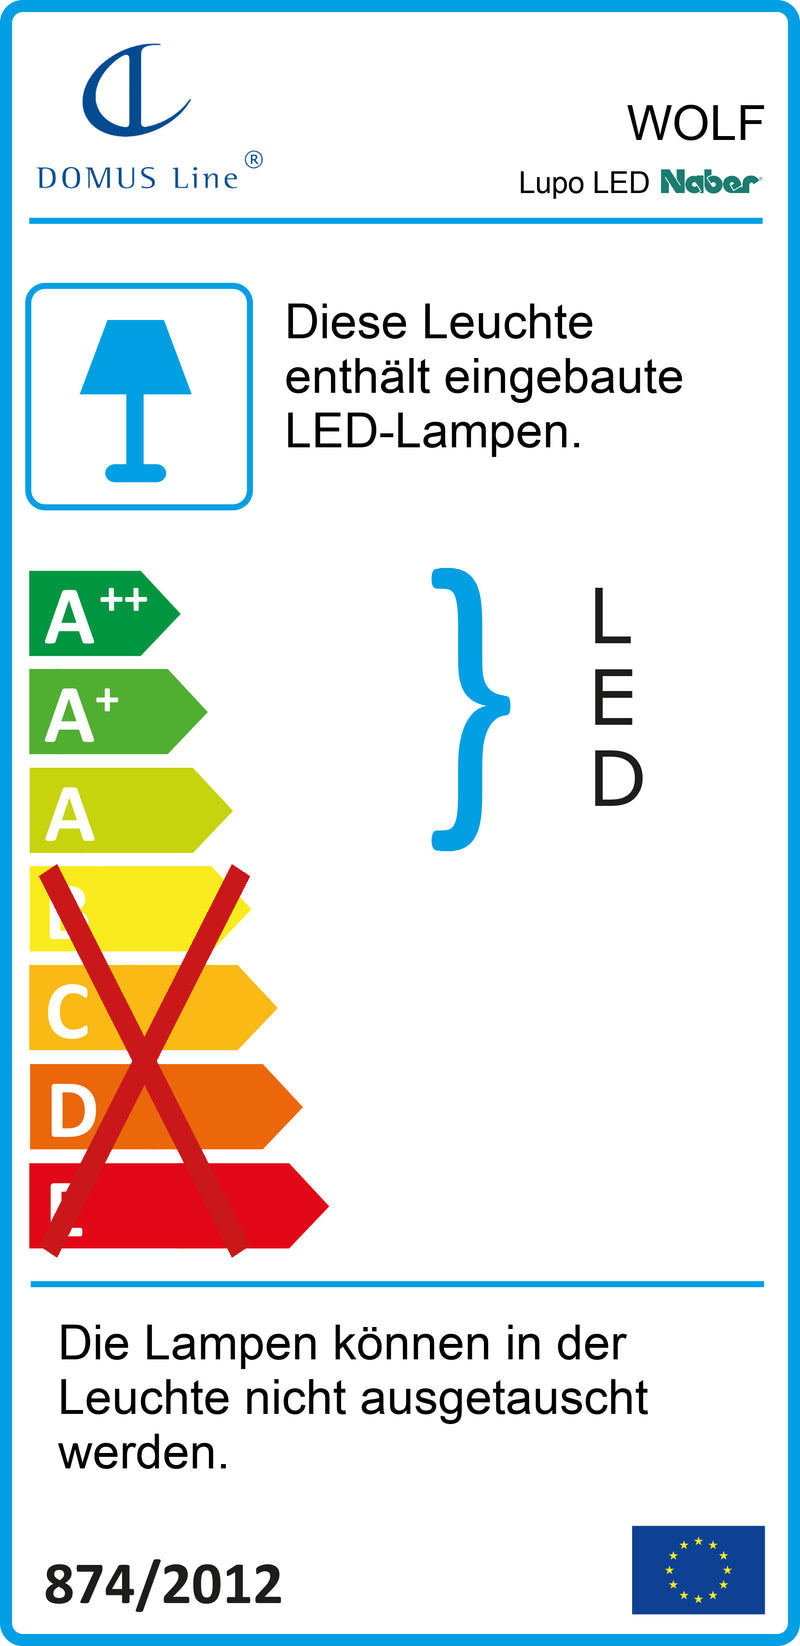 E-Label zu Zeichnung zu Lupo LED als Variante L 600 mm, 10 W, schwarz matt von Naber GmbH in der Kategorie Lichttechnik in Österreich auf conceptshop.at